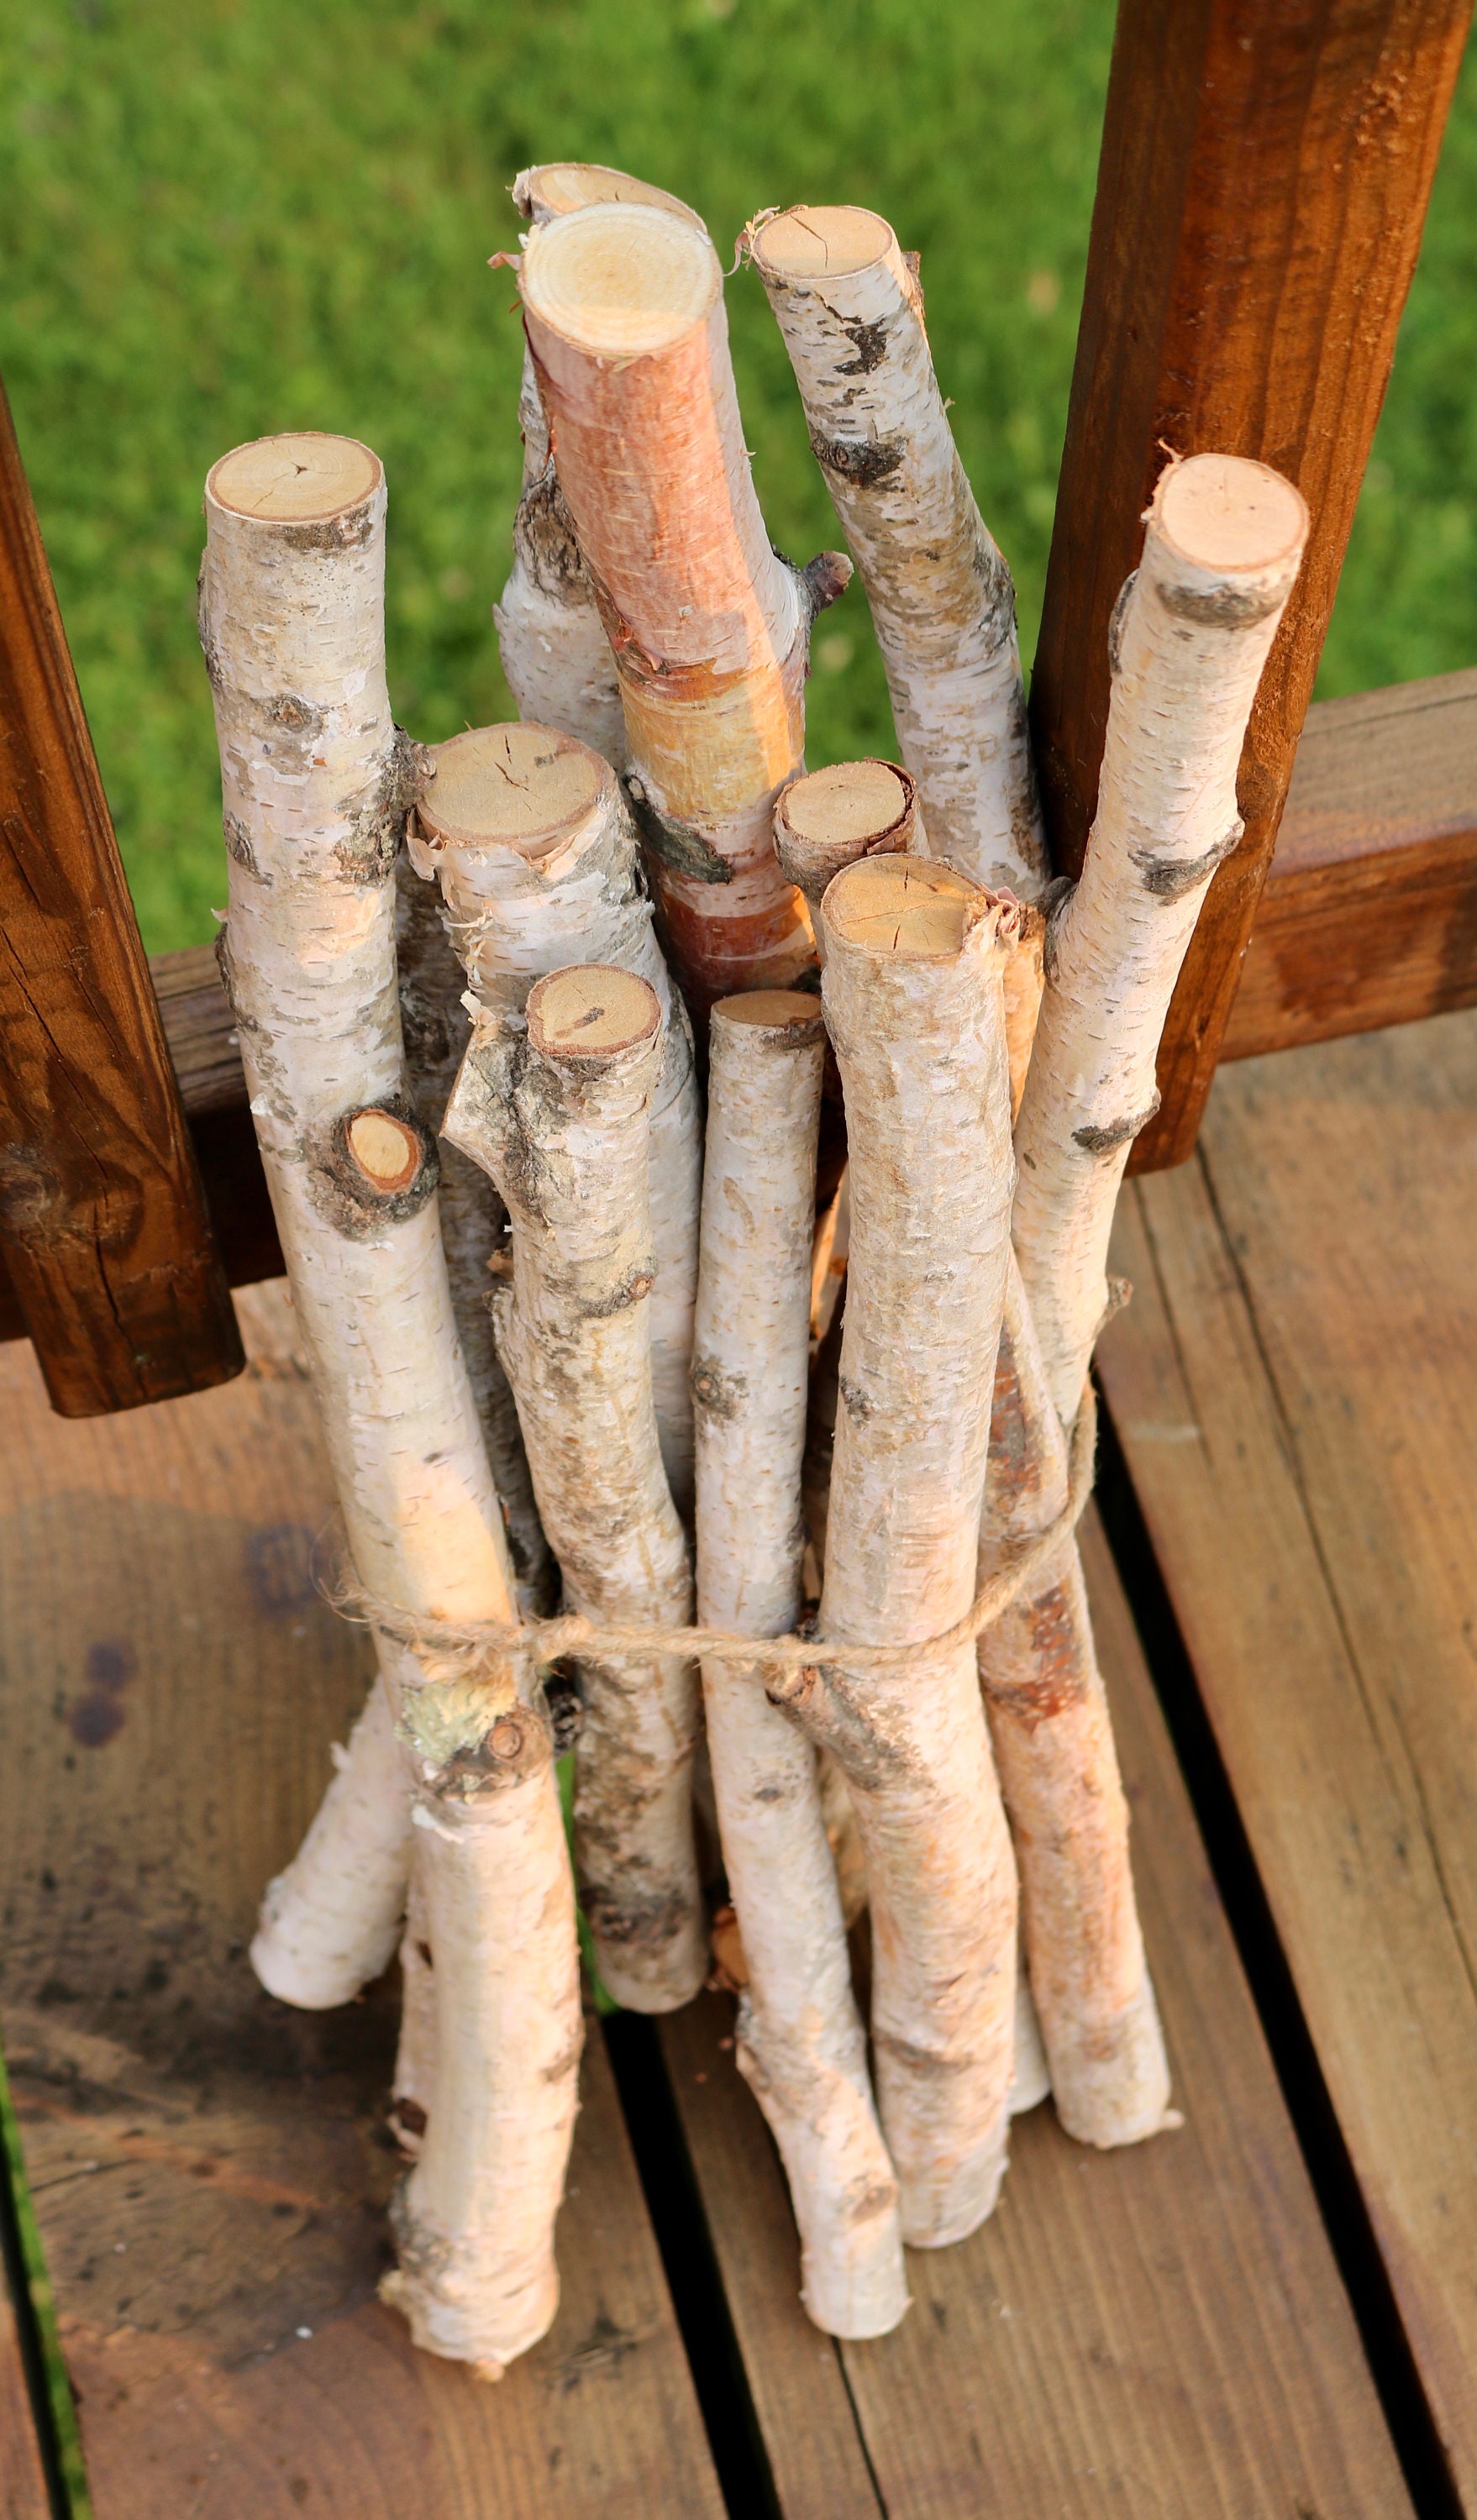 30 Birch Sticks. Wood Crafts. Wooden Sticks. Birch Wood Logs.forest Birch.  Wood Craft Sticks. Birch Sticks. Natural Wood Sticks 